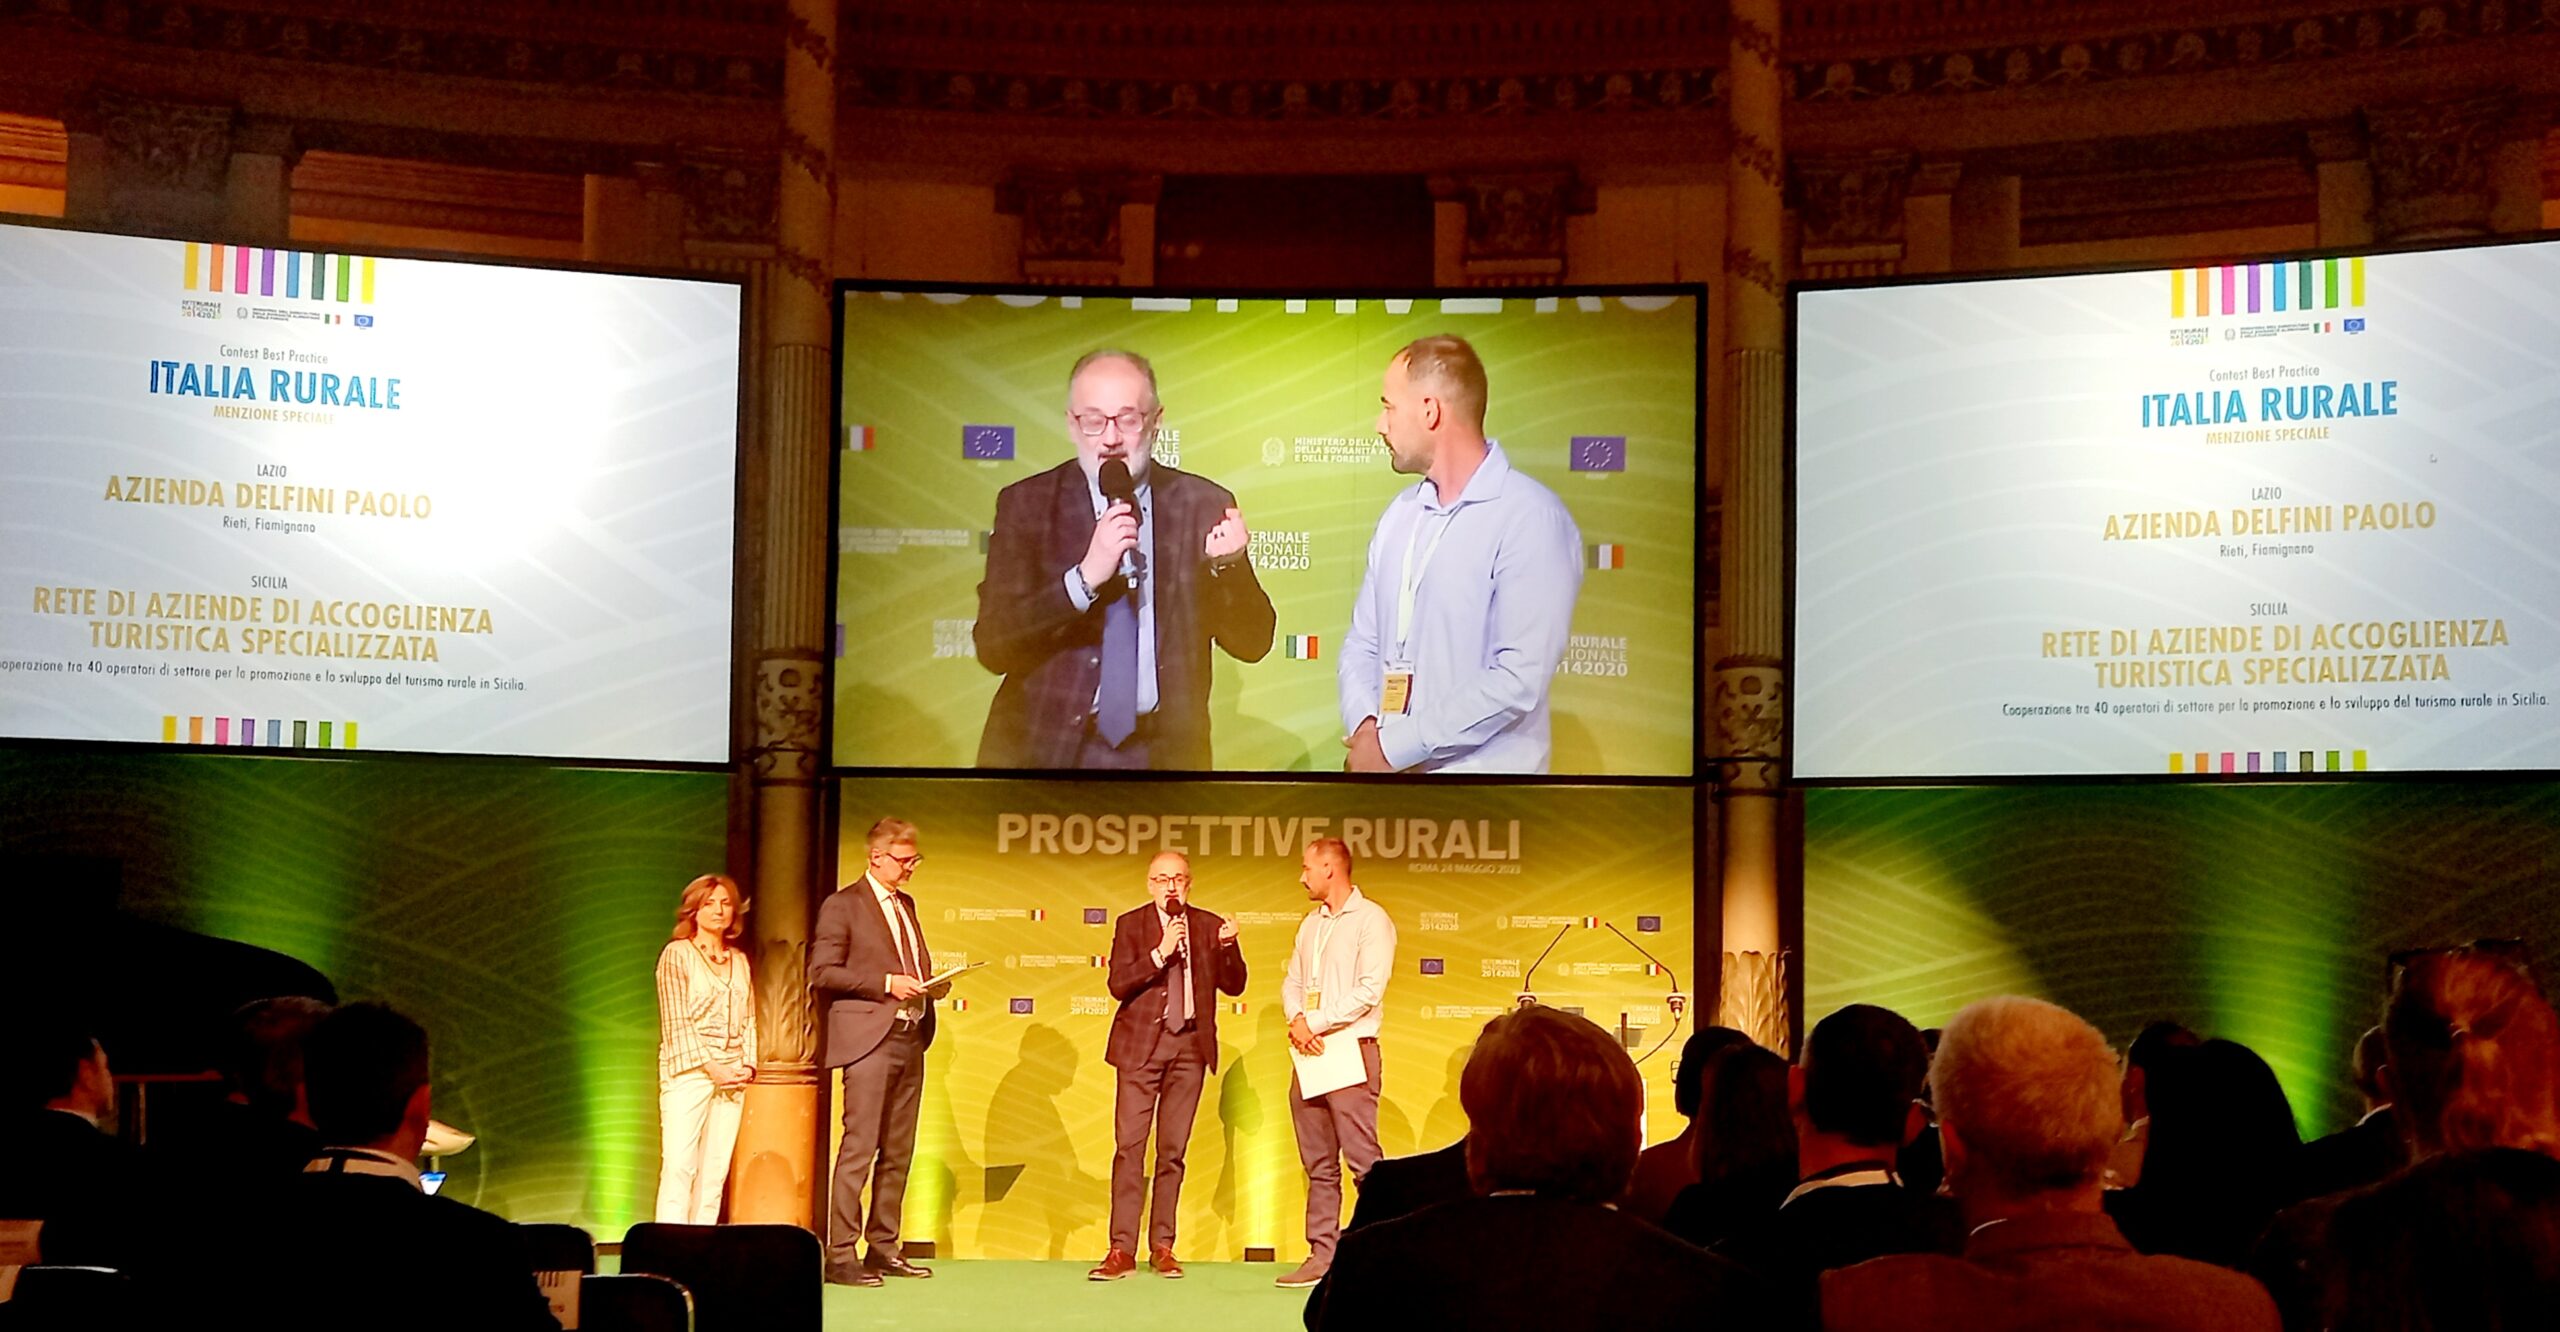  Il Lazio premiato al contest “Best Practice dell’Italia rurale” di Rete Rurale Nazionale